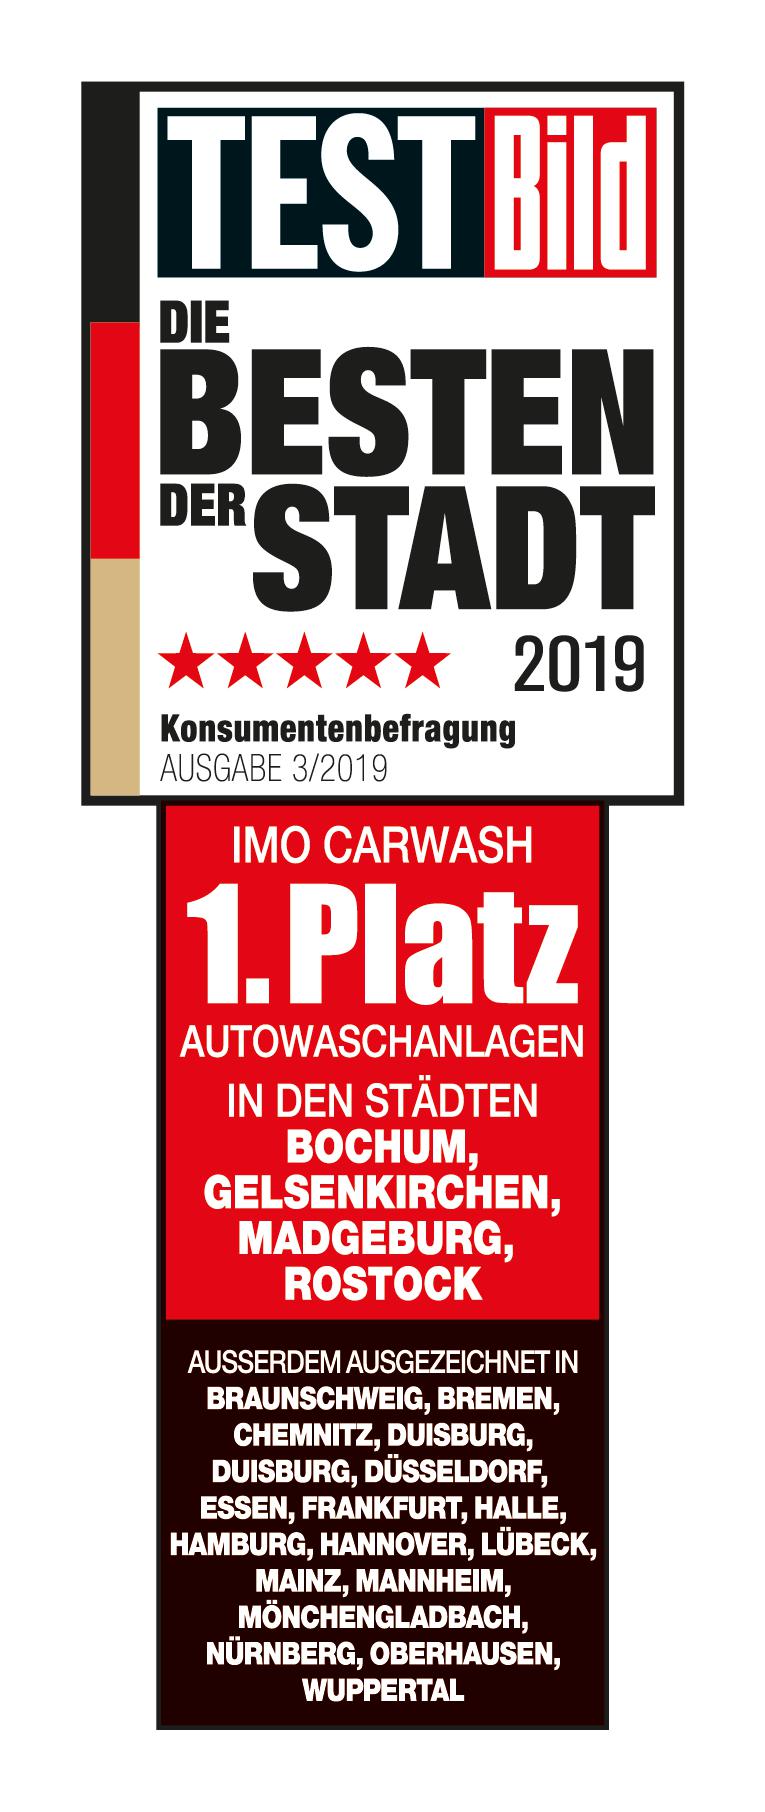 IMO Car Wash, Otto-von-Guericke-Str. 7 in Braunschweig